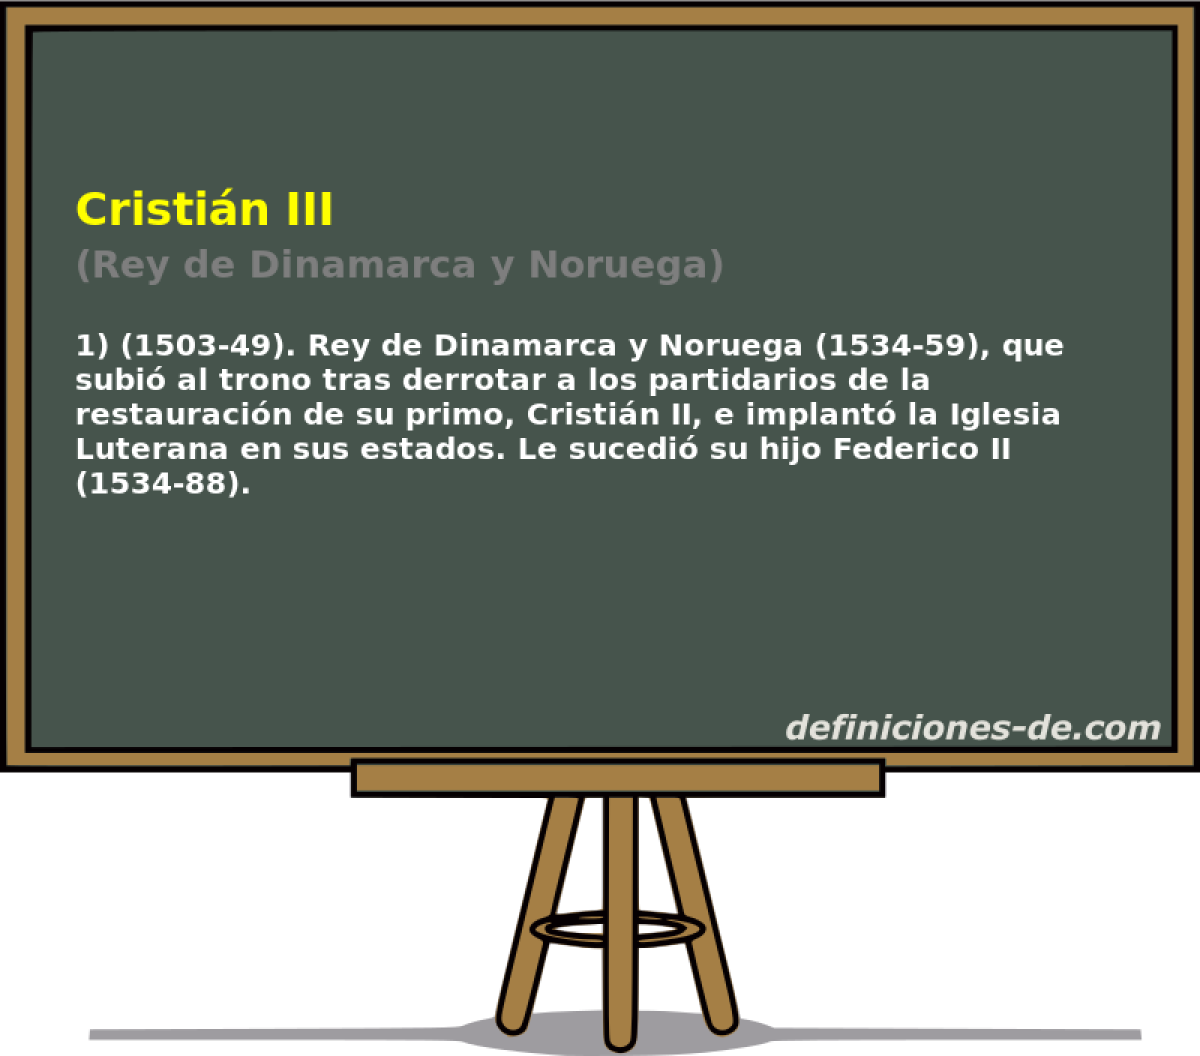 Cristi�n III (Rey de Dinamarca y Noruega)